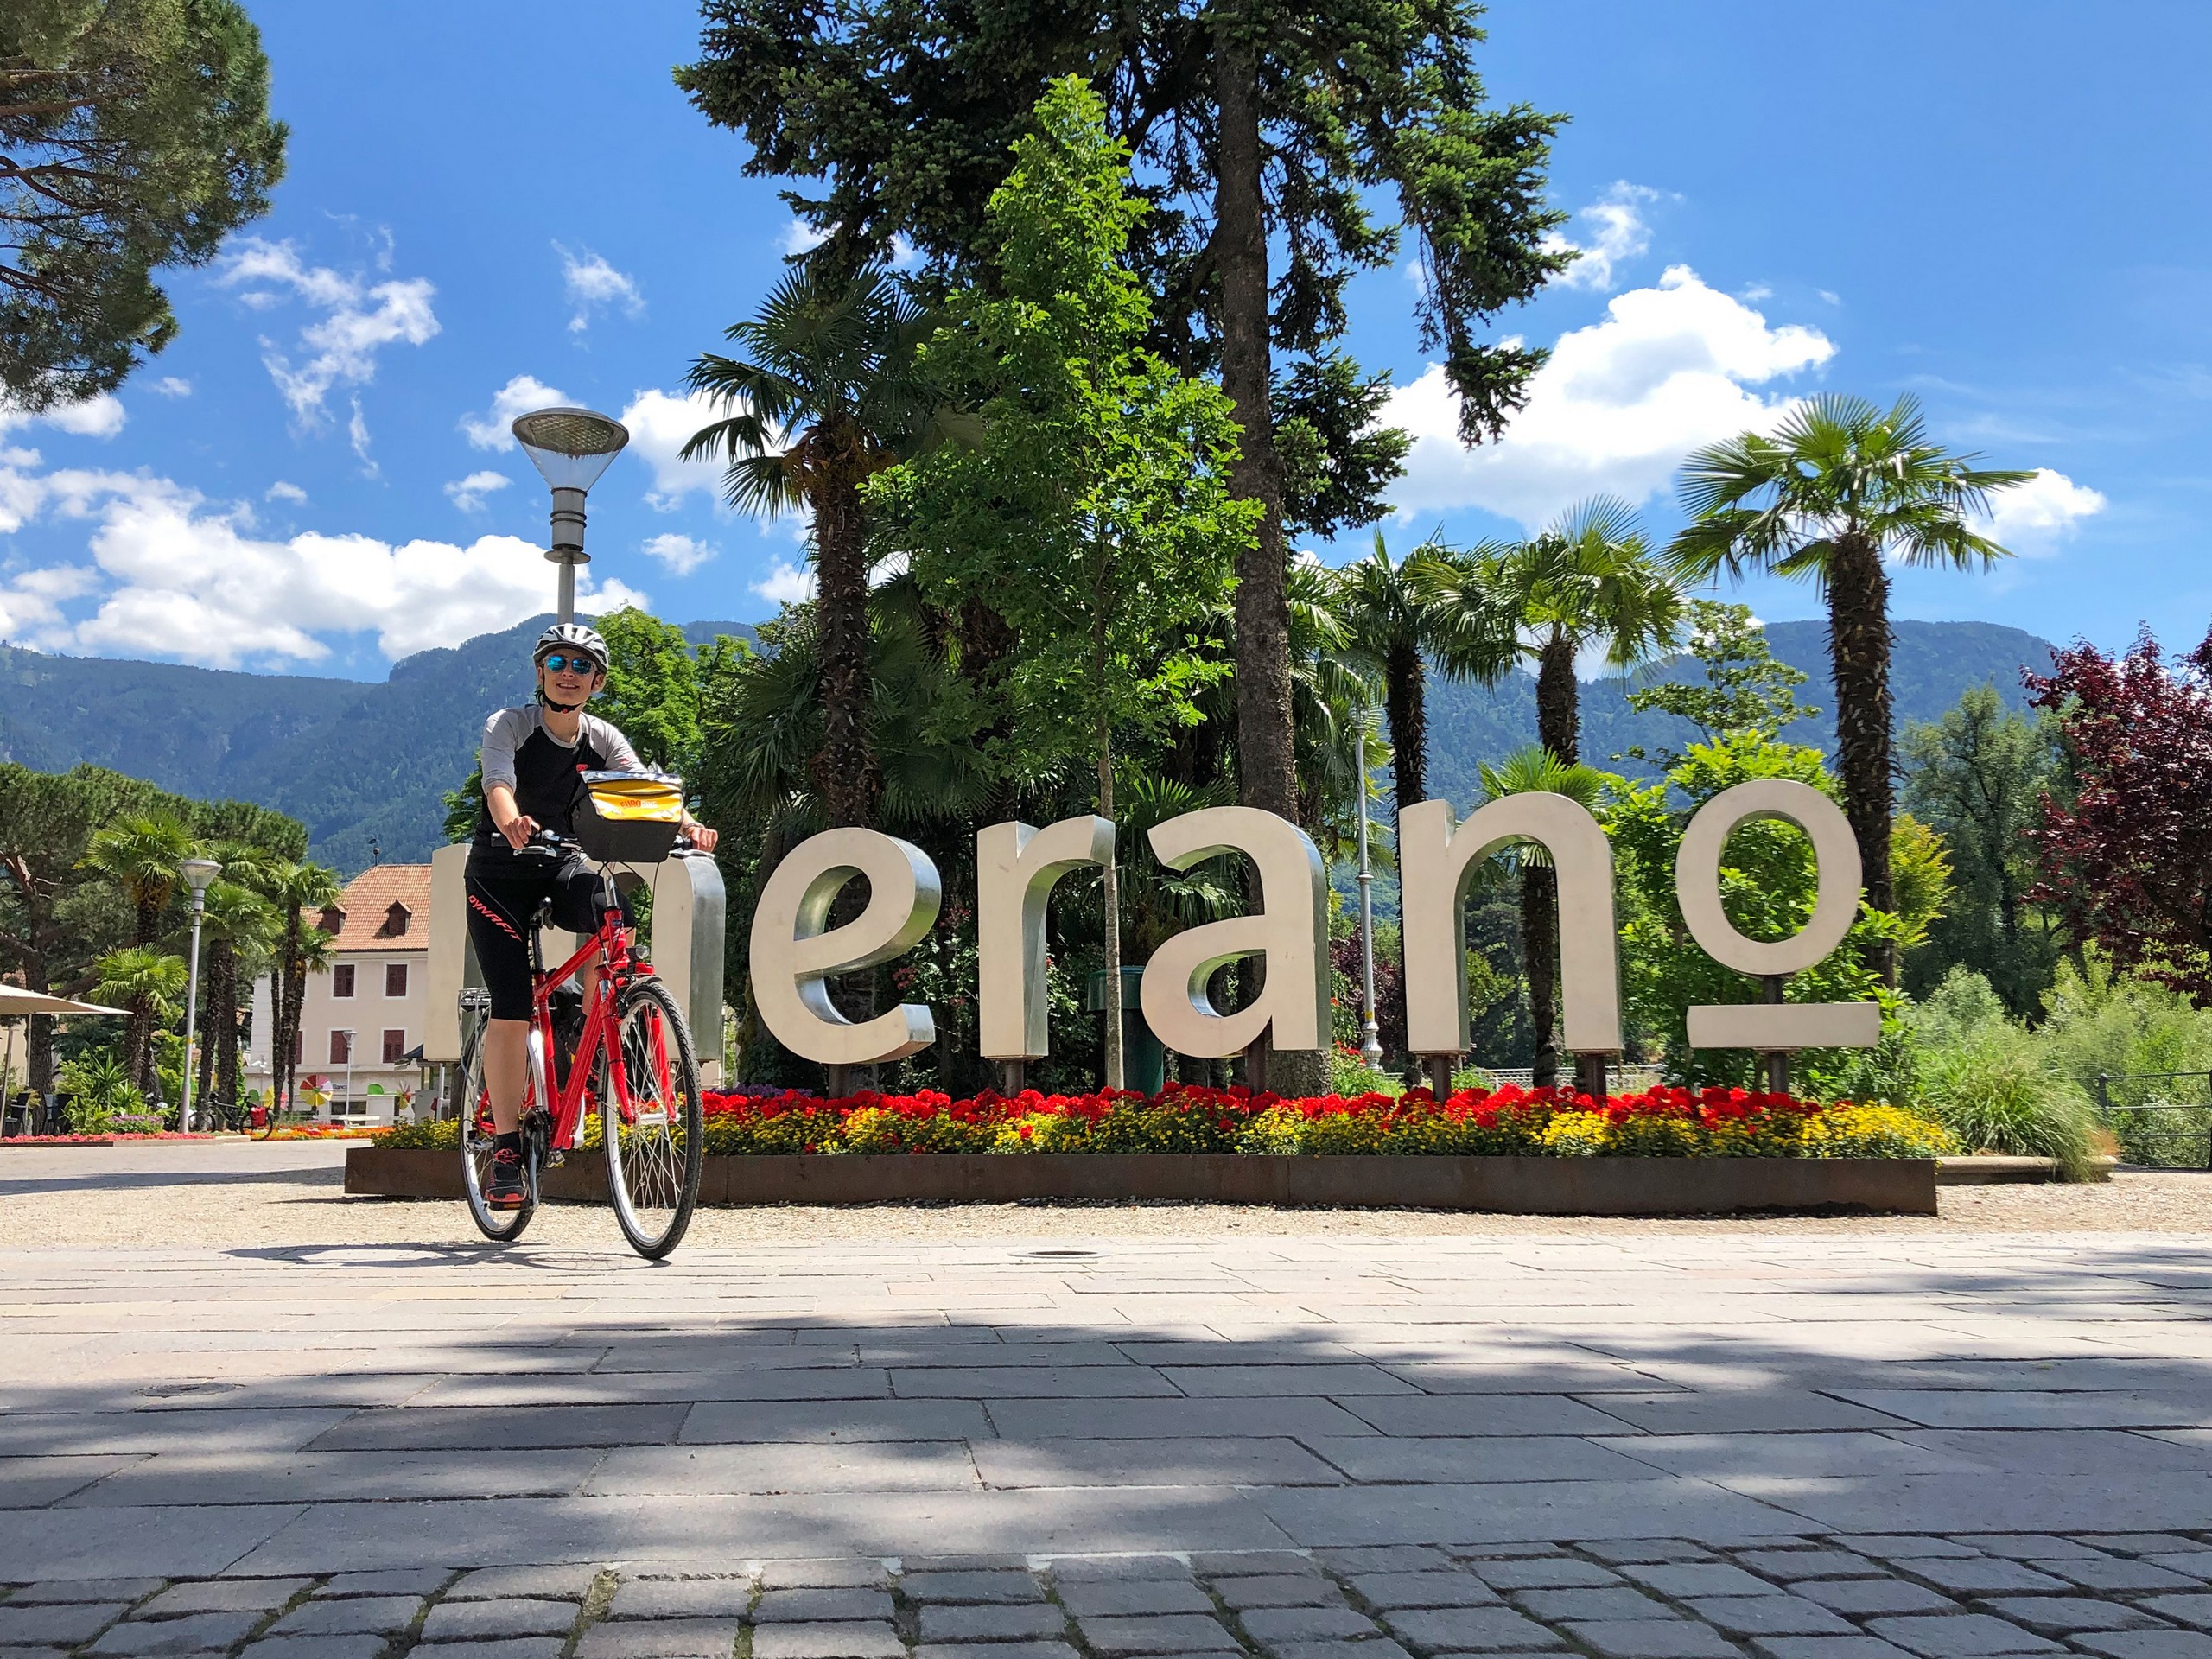 Self-guided biking tour from Munich to Garda 09